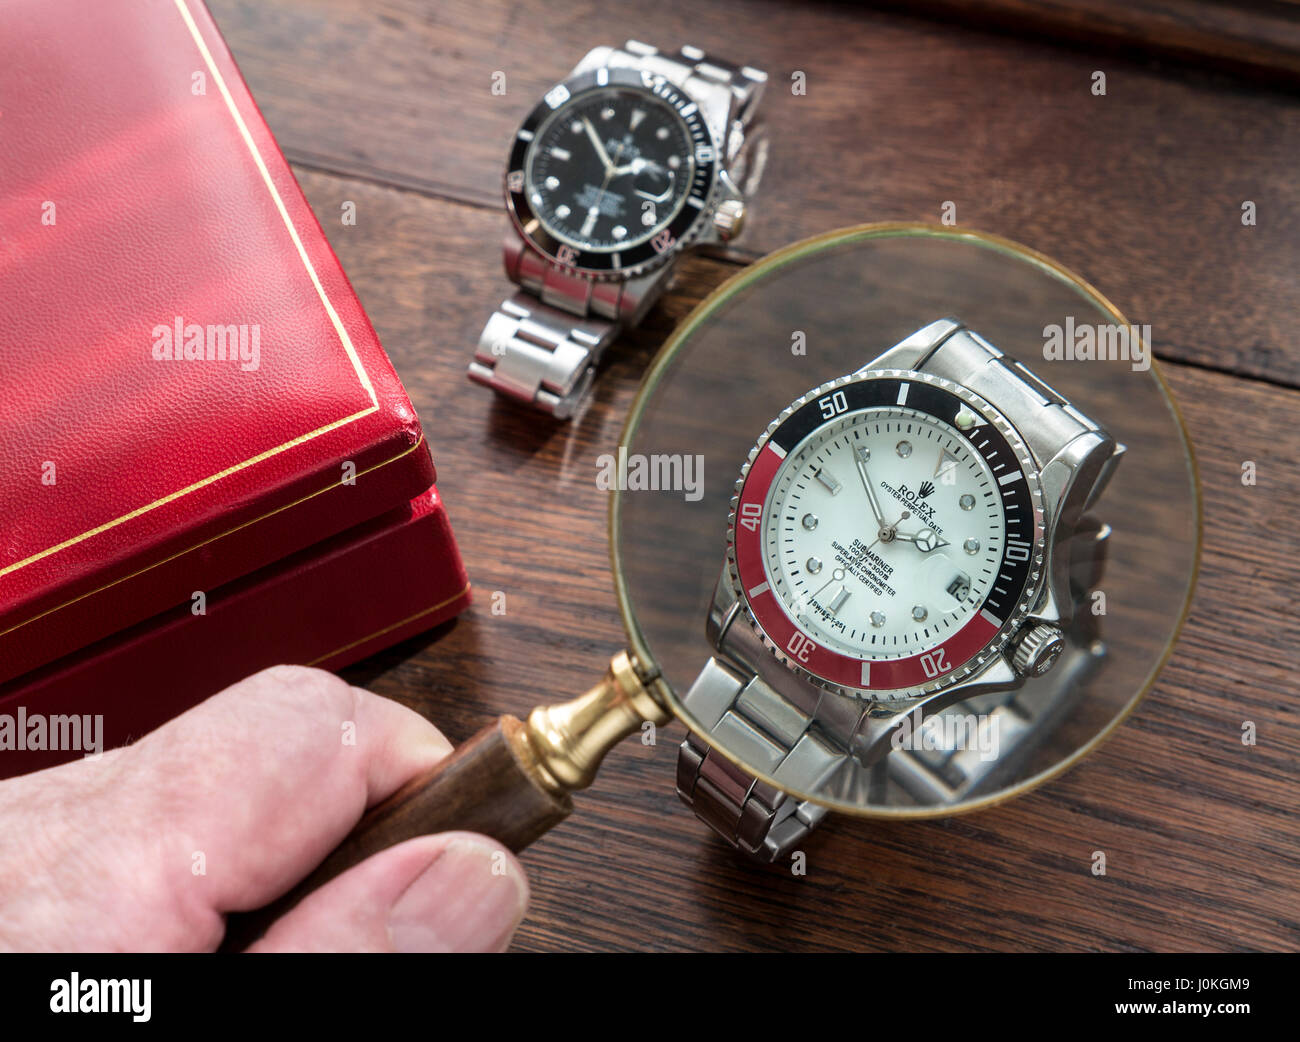 ROLEX FALSI OROLOGI lente di ingrandimento e falsa replica copia orologi Rolex uomo contraffatti su vecchio piano di legno con cassa orologio in pelle rossa Foto Stock